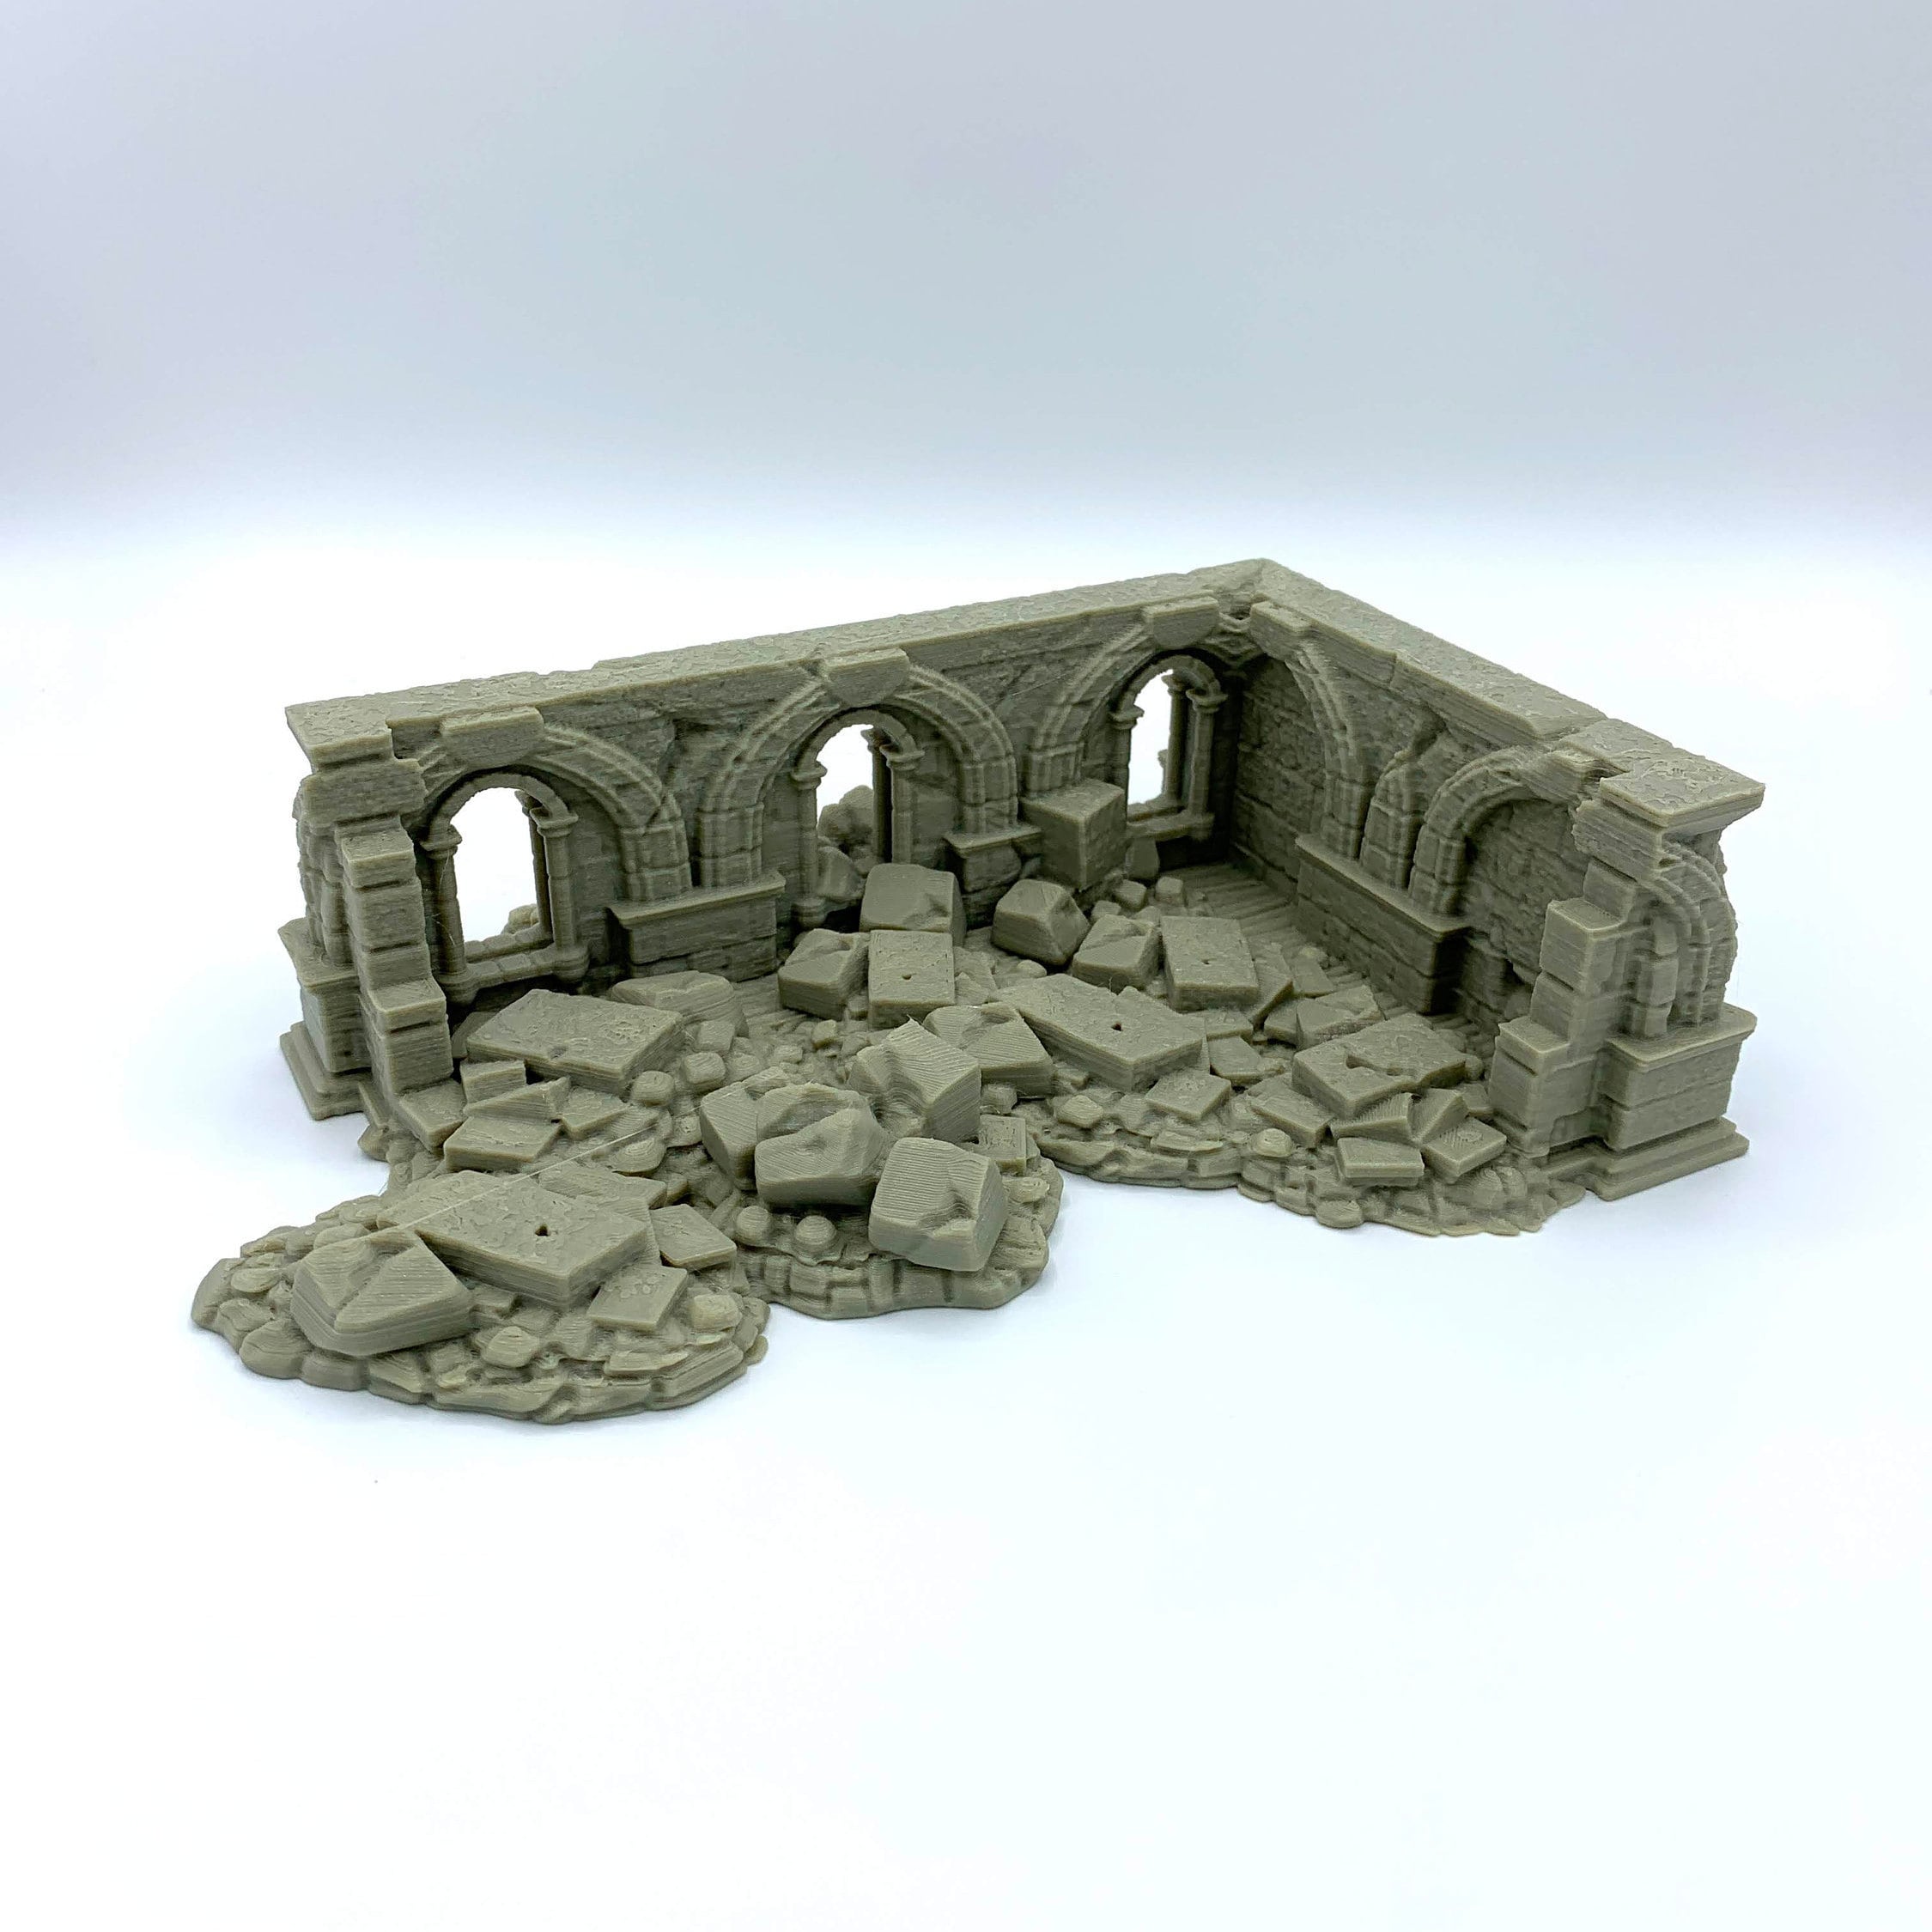 Stormguard - Ruined House 3 / 28mm Wargame / RPG 3d Printed Tabletop Wargaming Terrain